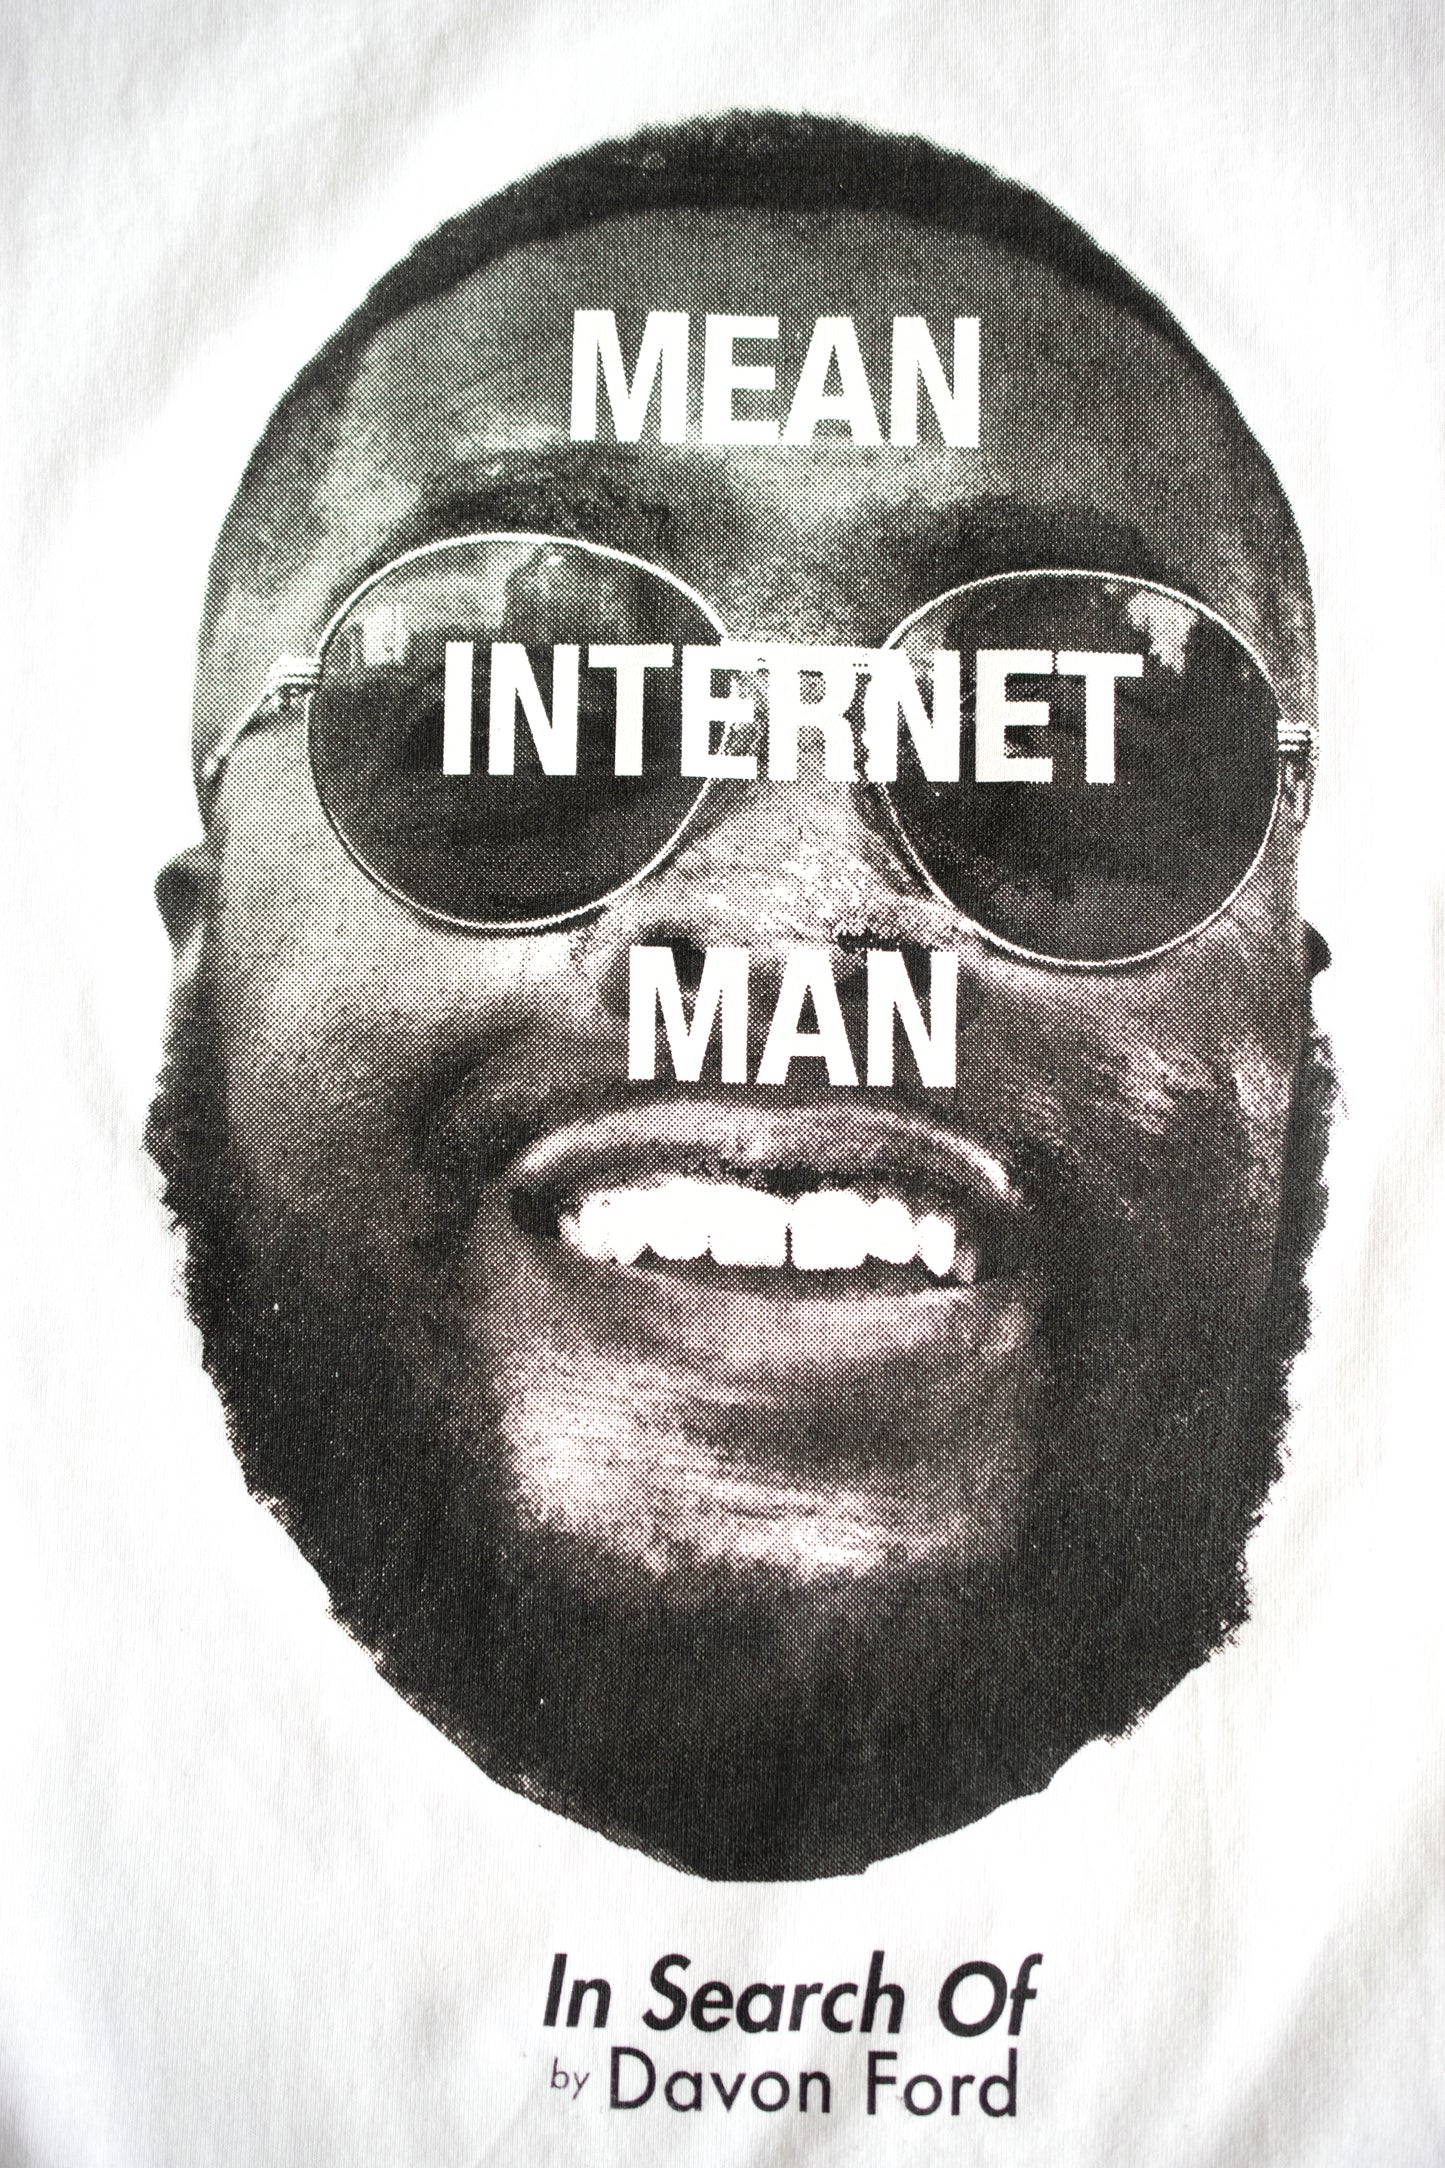 Mean Internet Man Tee Shirt